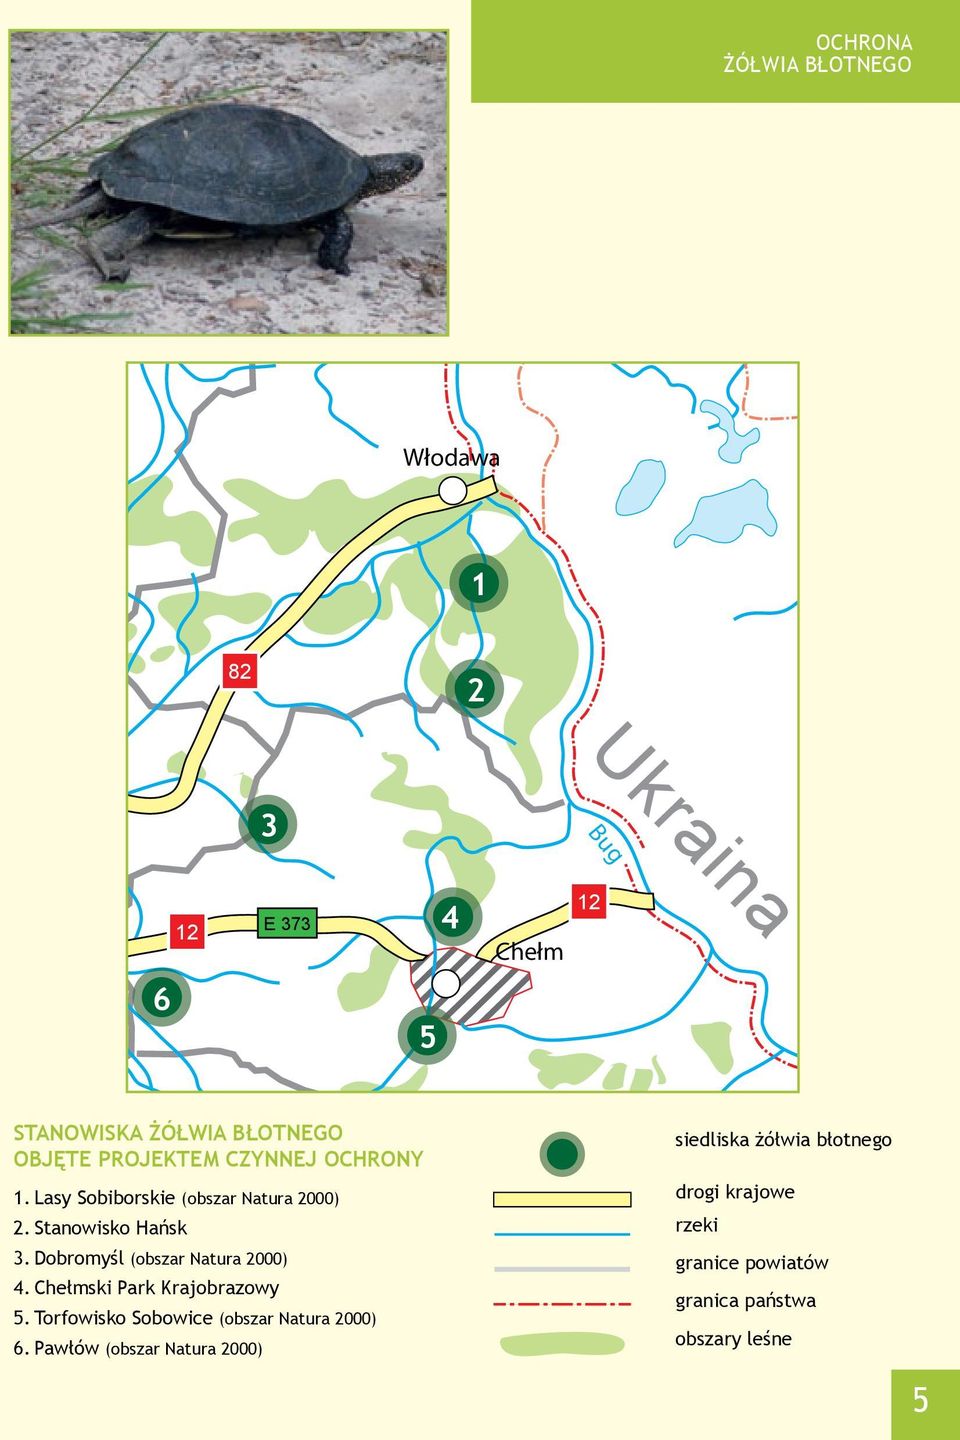 Dobromyśl (obszar natura 2000) 4. Chełmski Park Krajobrazowy 5. torfowisko Sobowice (obszar natura 2000) 6.